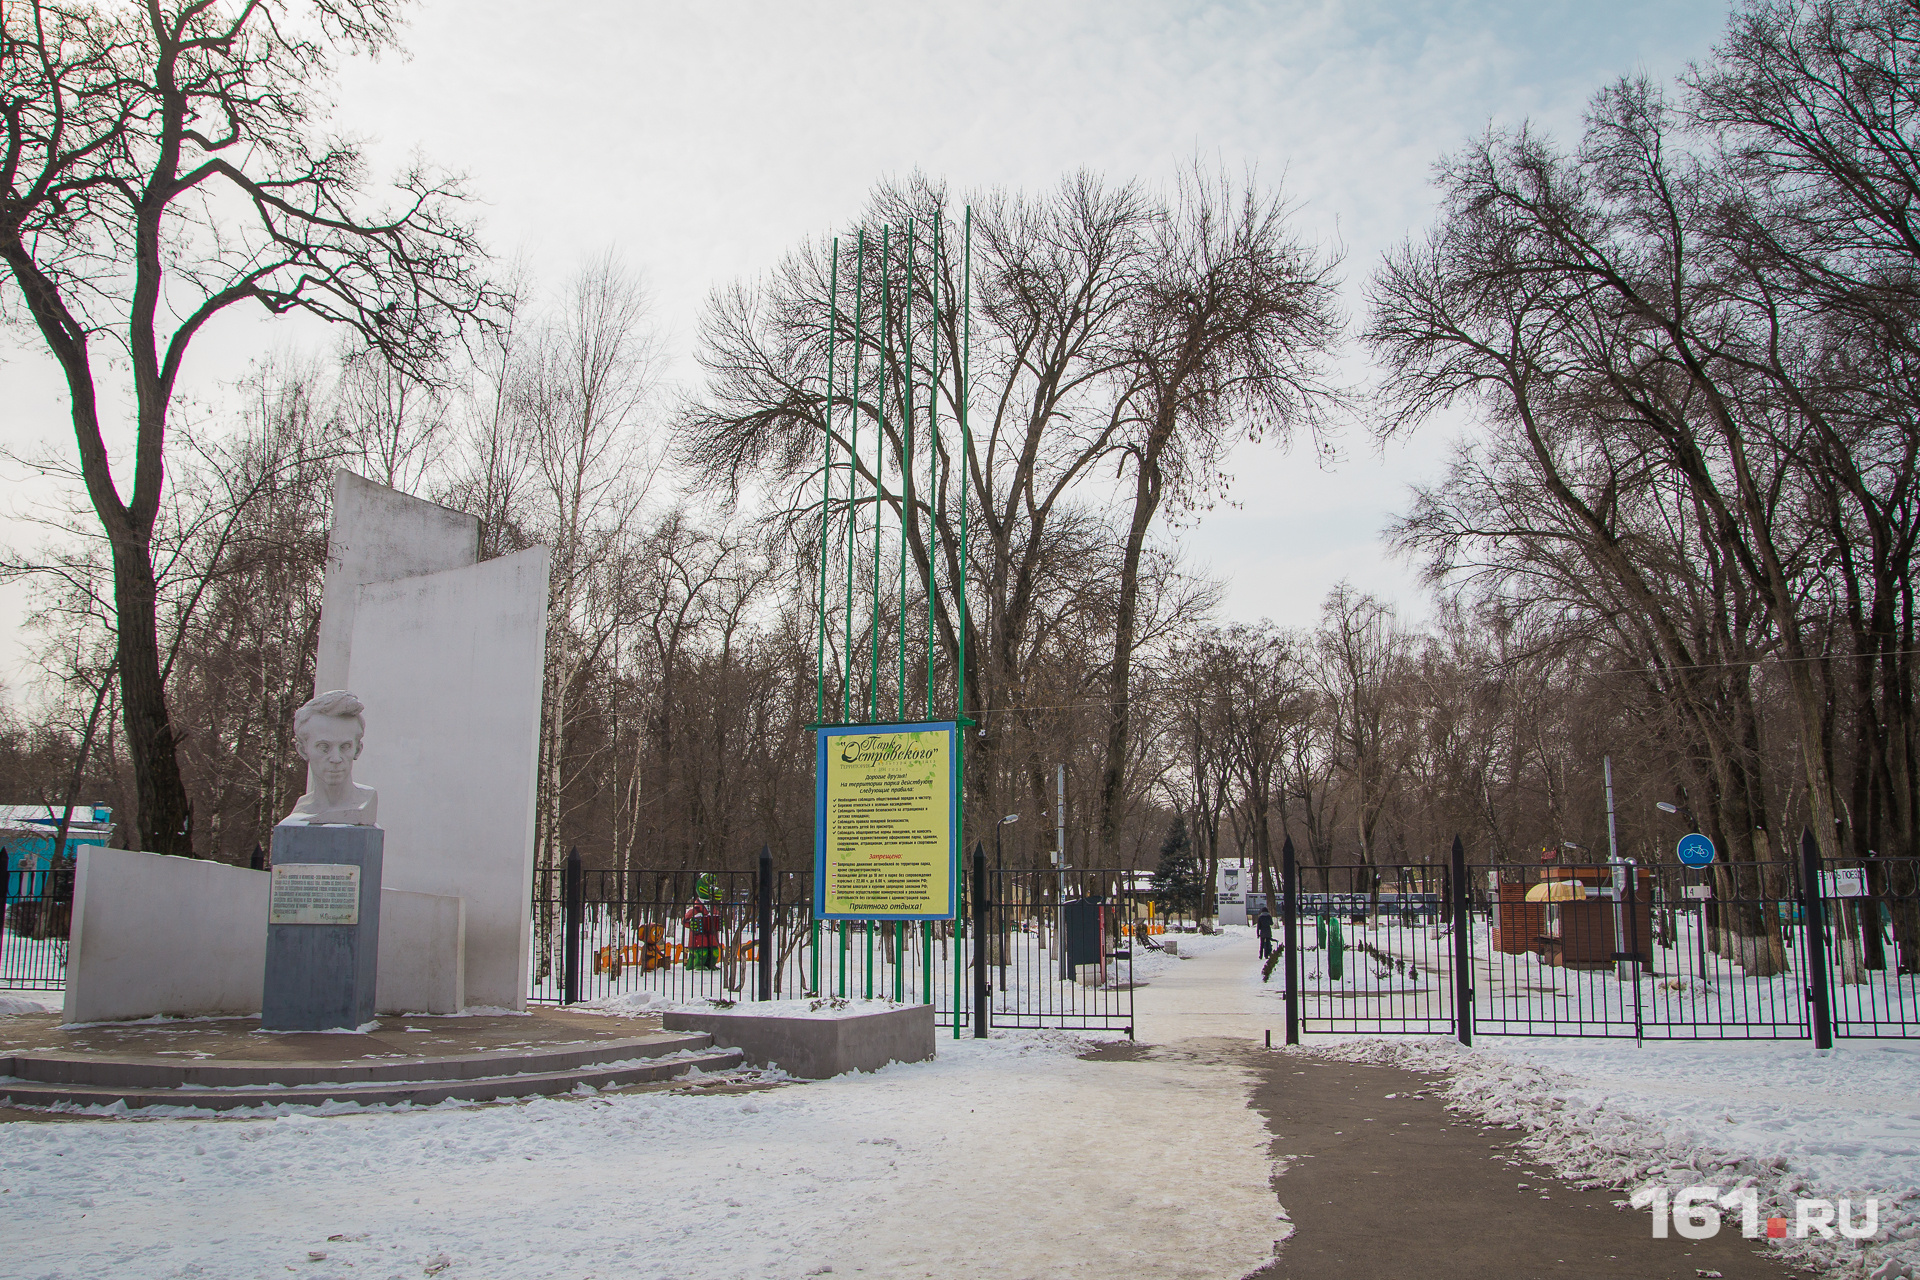 Центральный вход в парк Островского расположен на проспекте Сельмаш